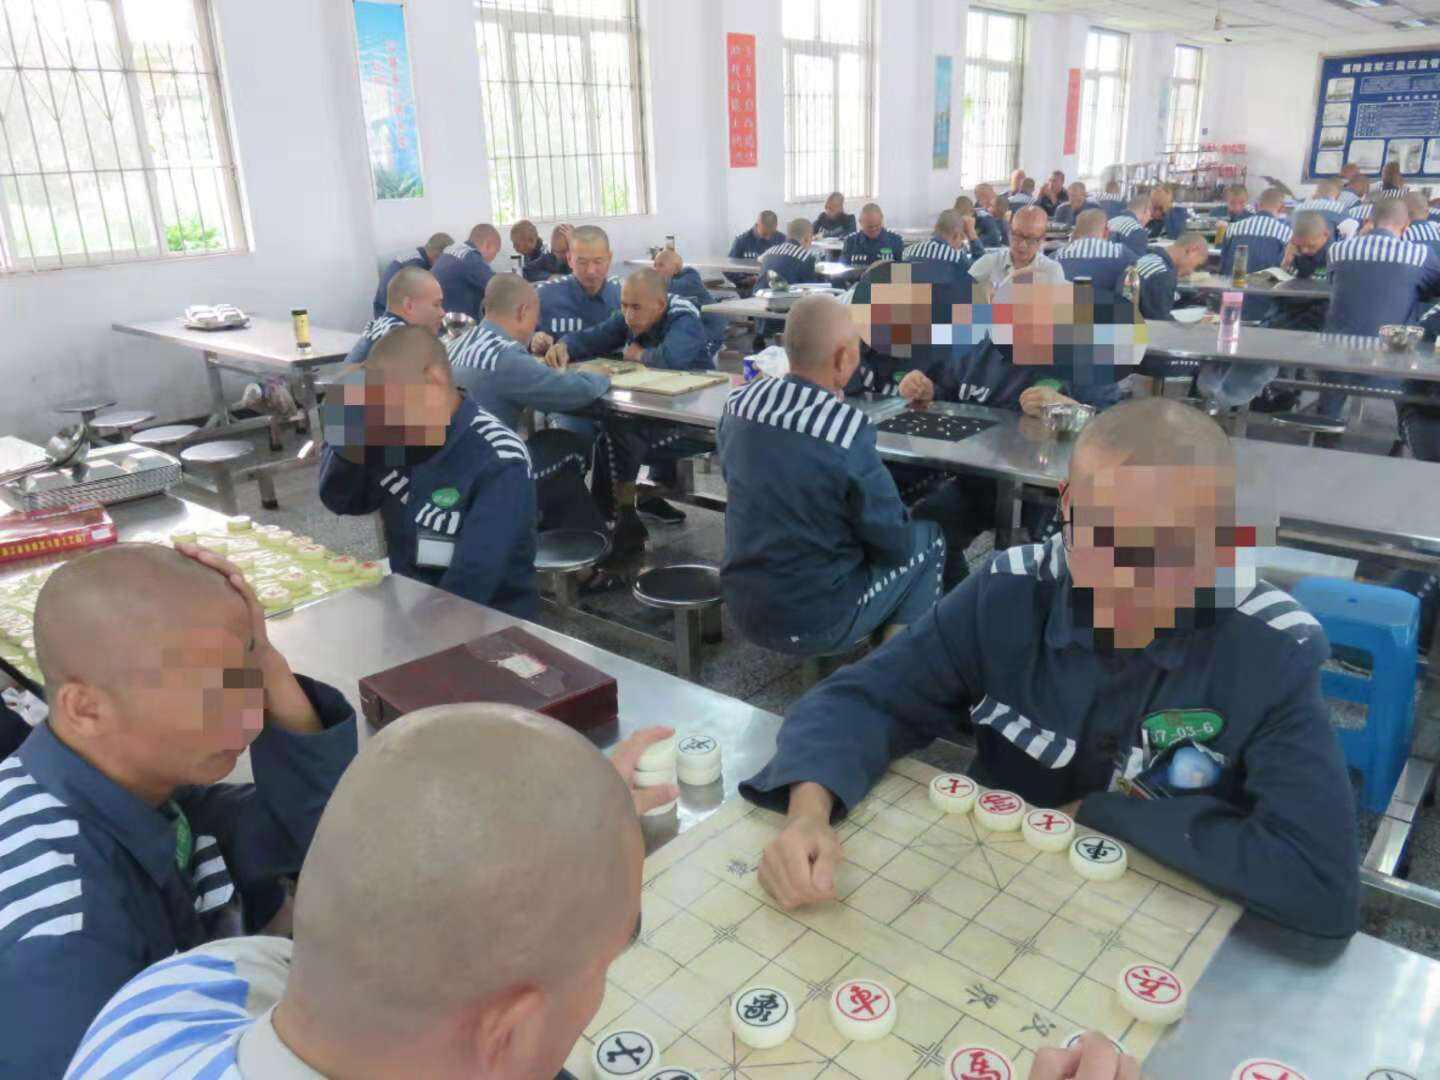 北京天河监狱真实生活图片